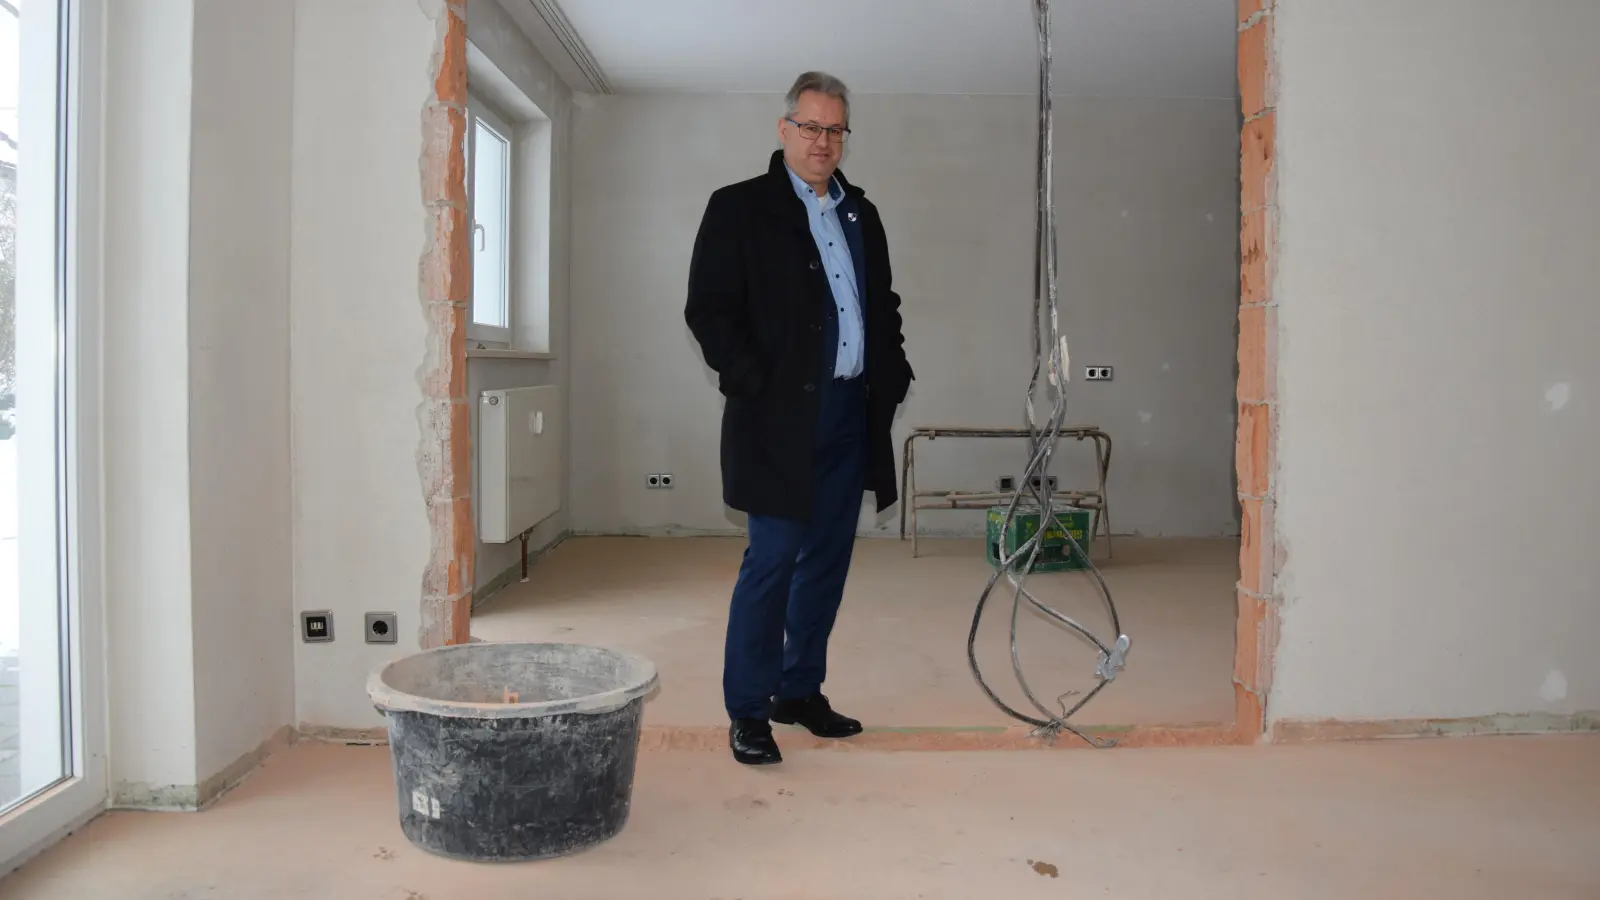 Kita folgt auf Landgasthof: Bürgermeister Martin Dannhäußer in den Räumen „Im Gärtlein” (Foto: jle)